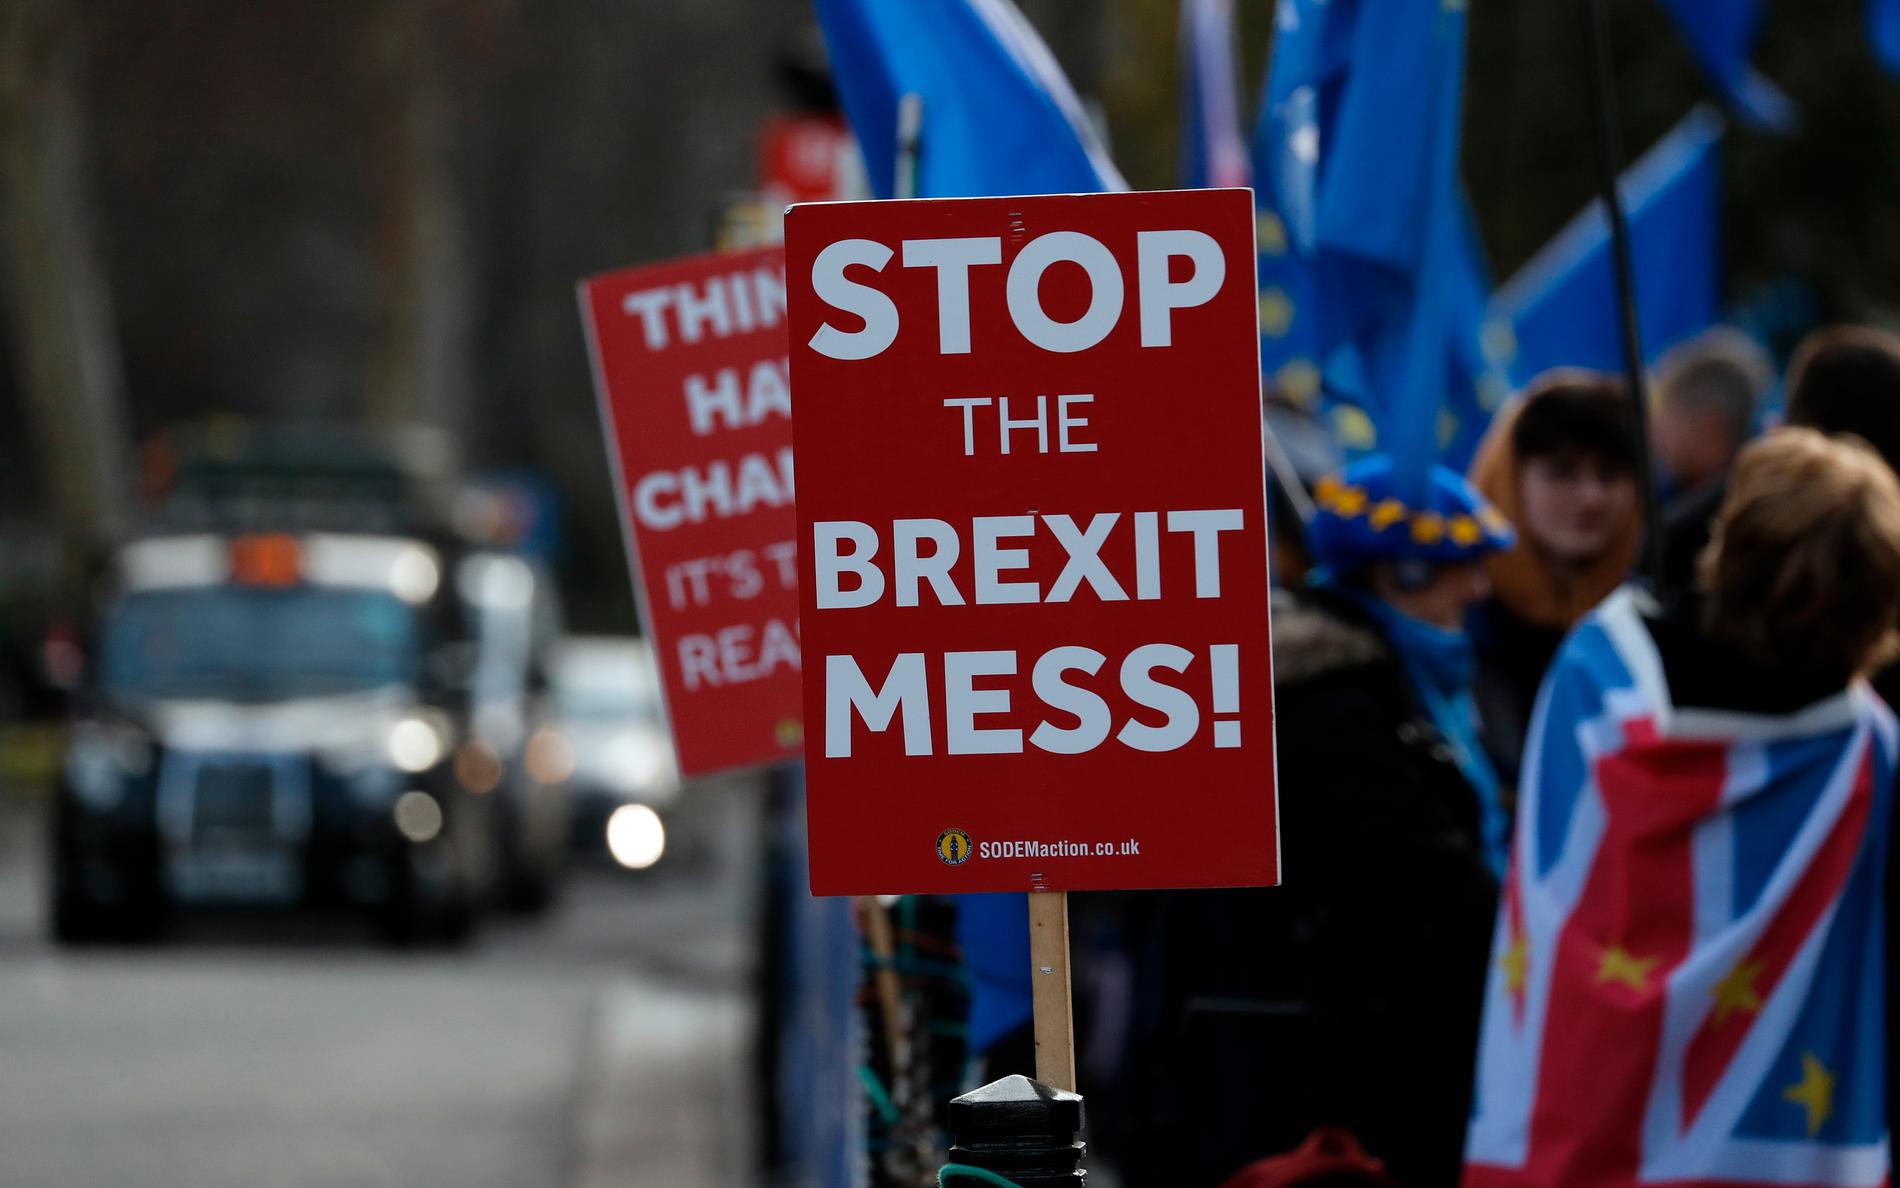 Stoppa brexit-röran, kräver brittiska demonstranter som vill att Storbritannien stannar kvar i EU.